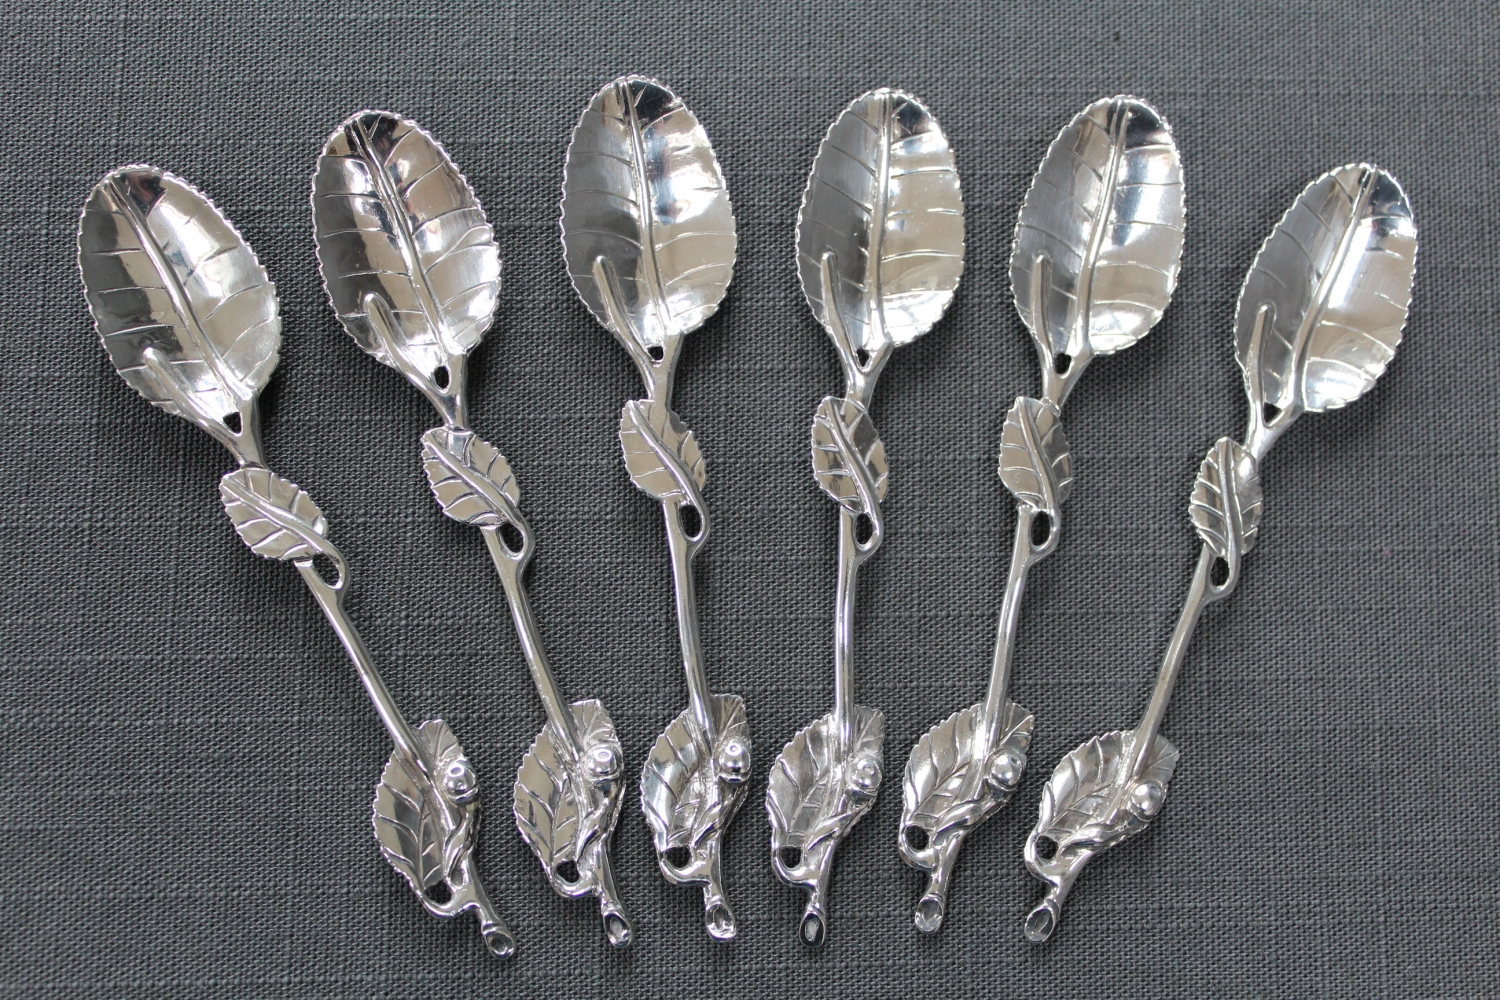 John (I) Derussat silver teaspoons